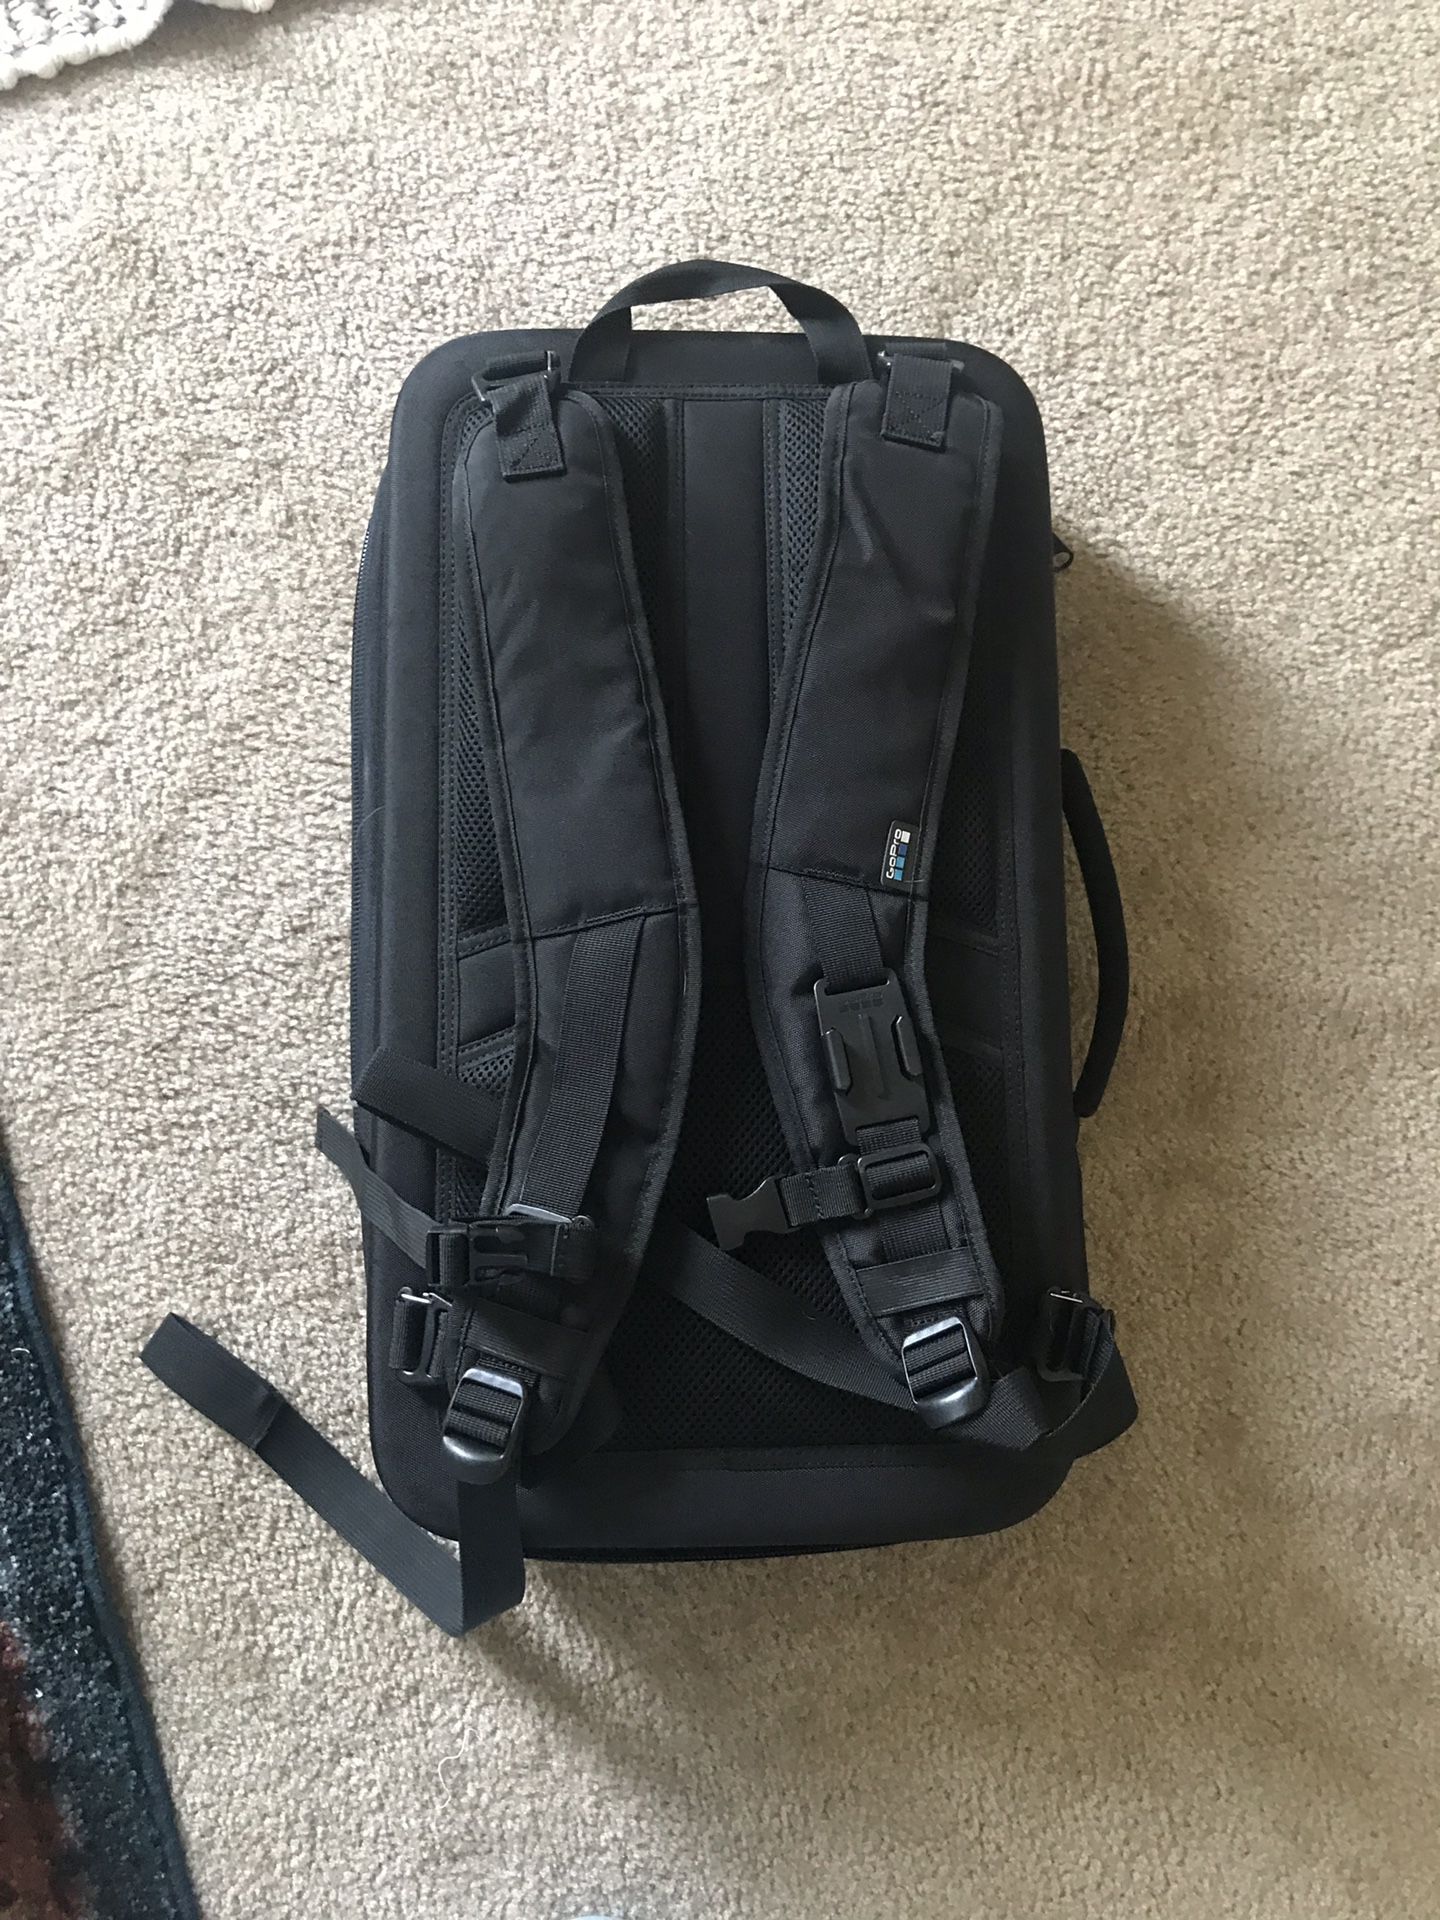 GoPro karma backpack